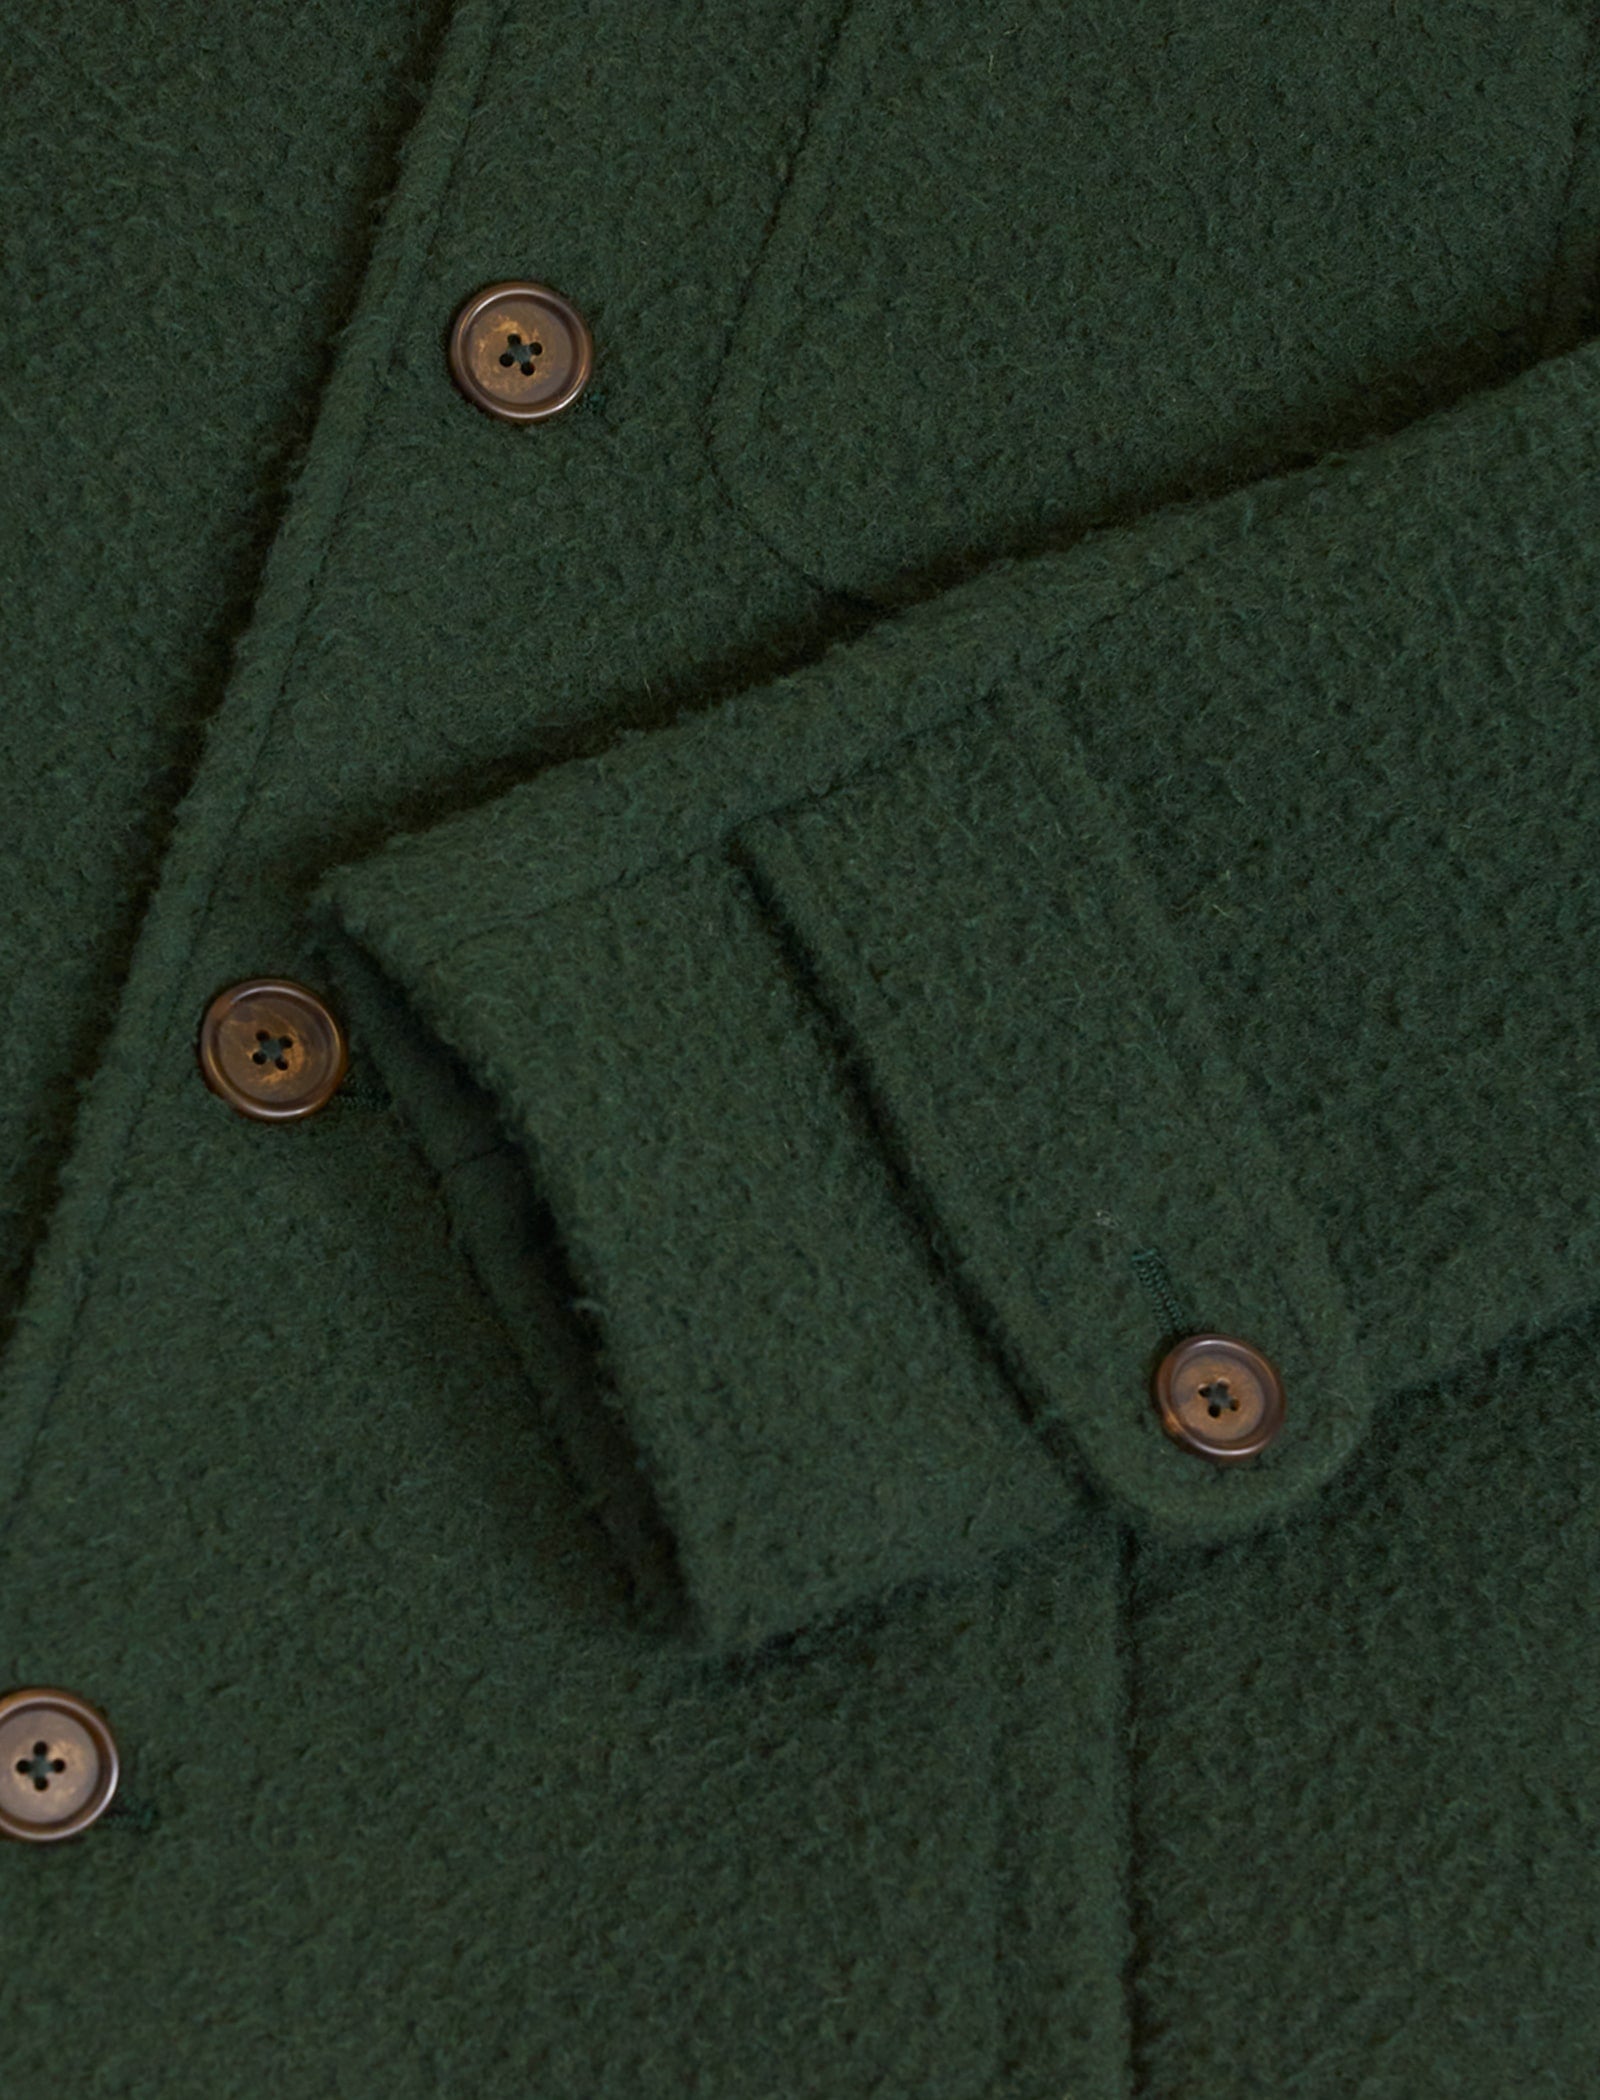 Green Casentino Wool Overcoat